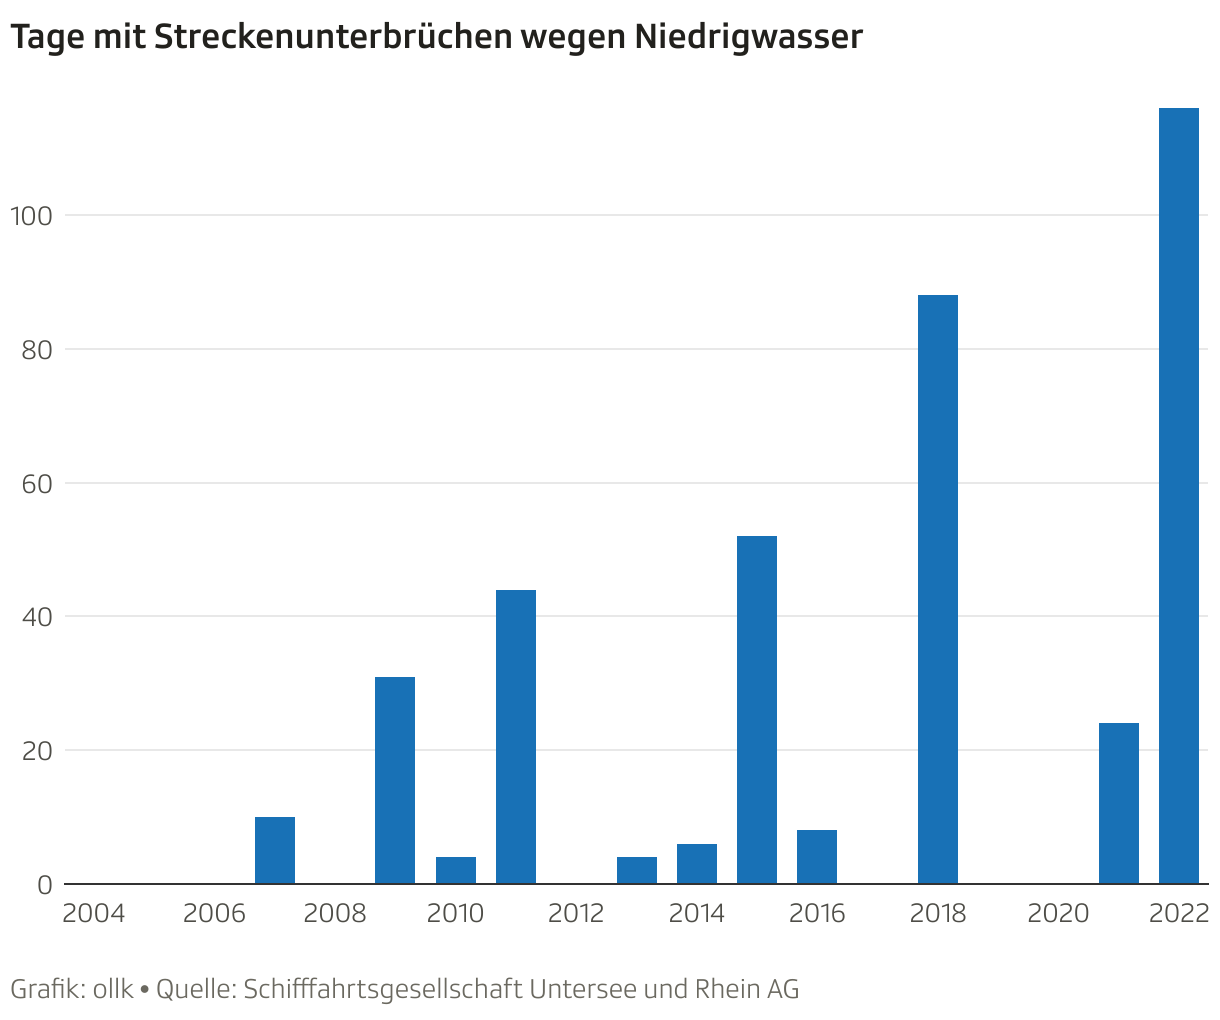 Seit 2004 haben die Tage, an denen die Rheinschifffahrt wegen Niedrigwasser nicht die gesamte Strecke befahren konnte, zugenommen.